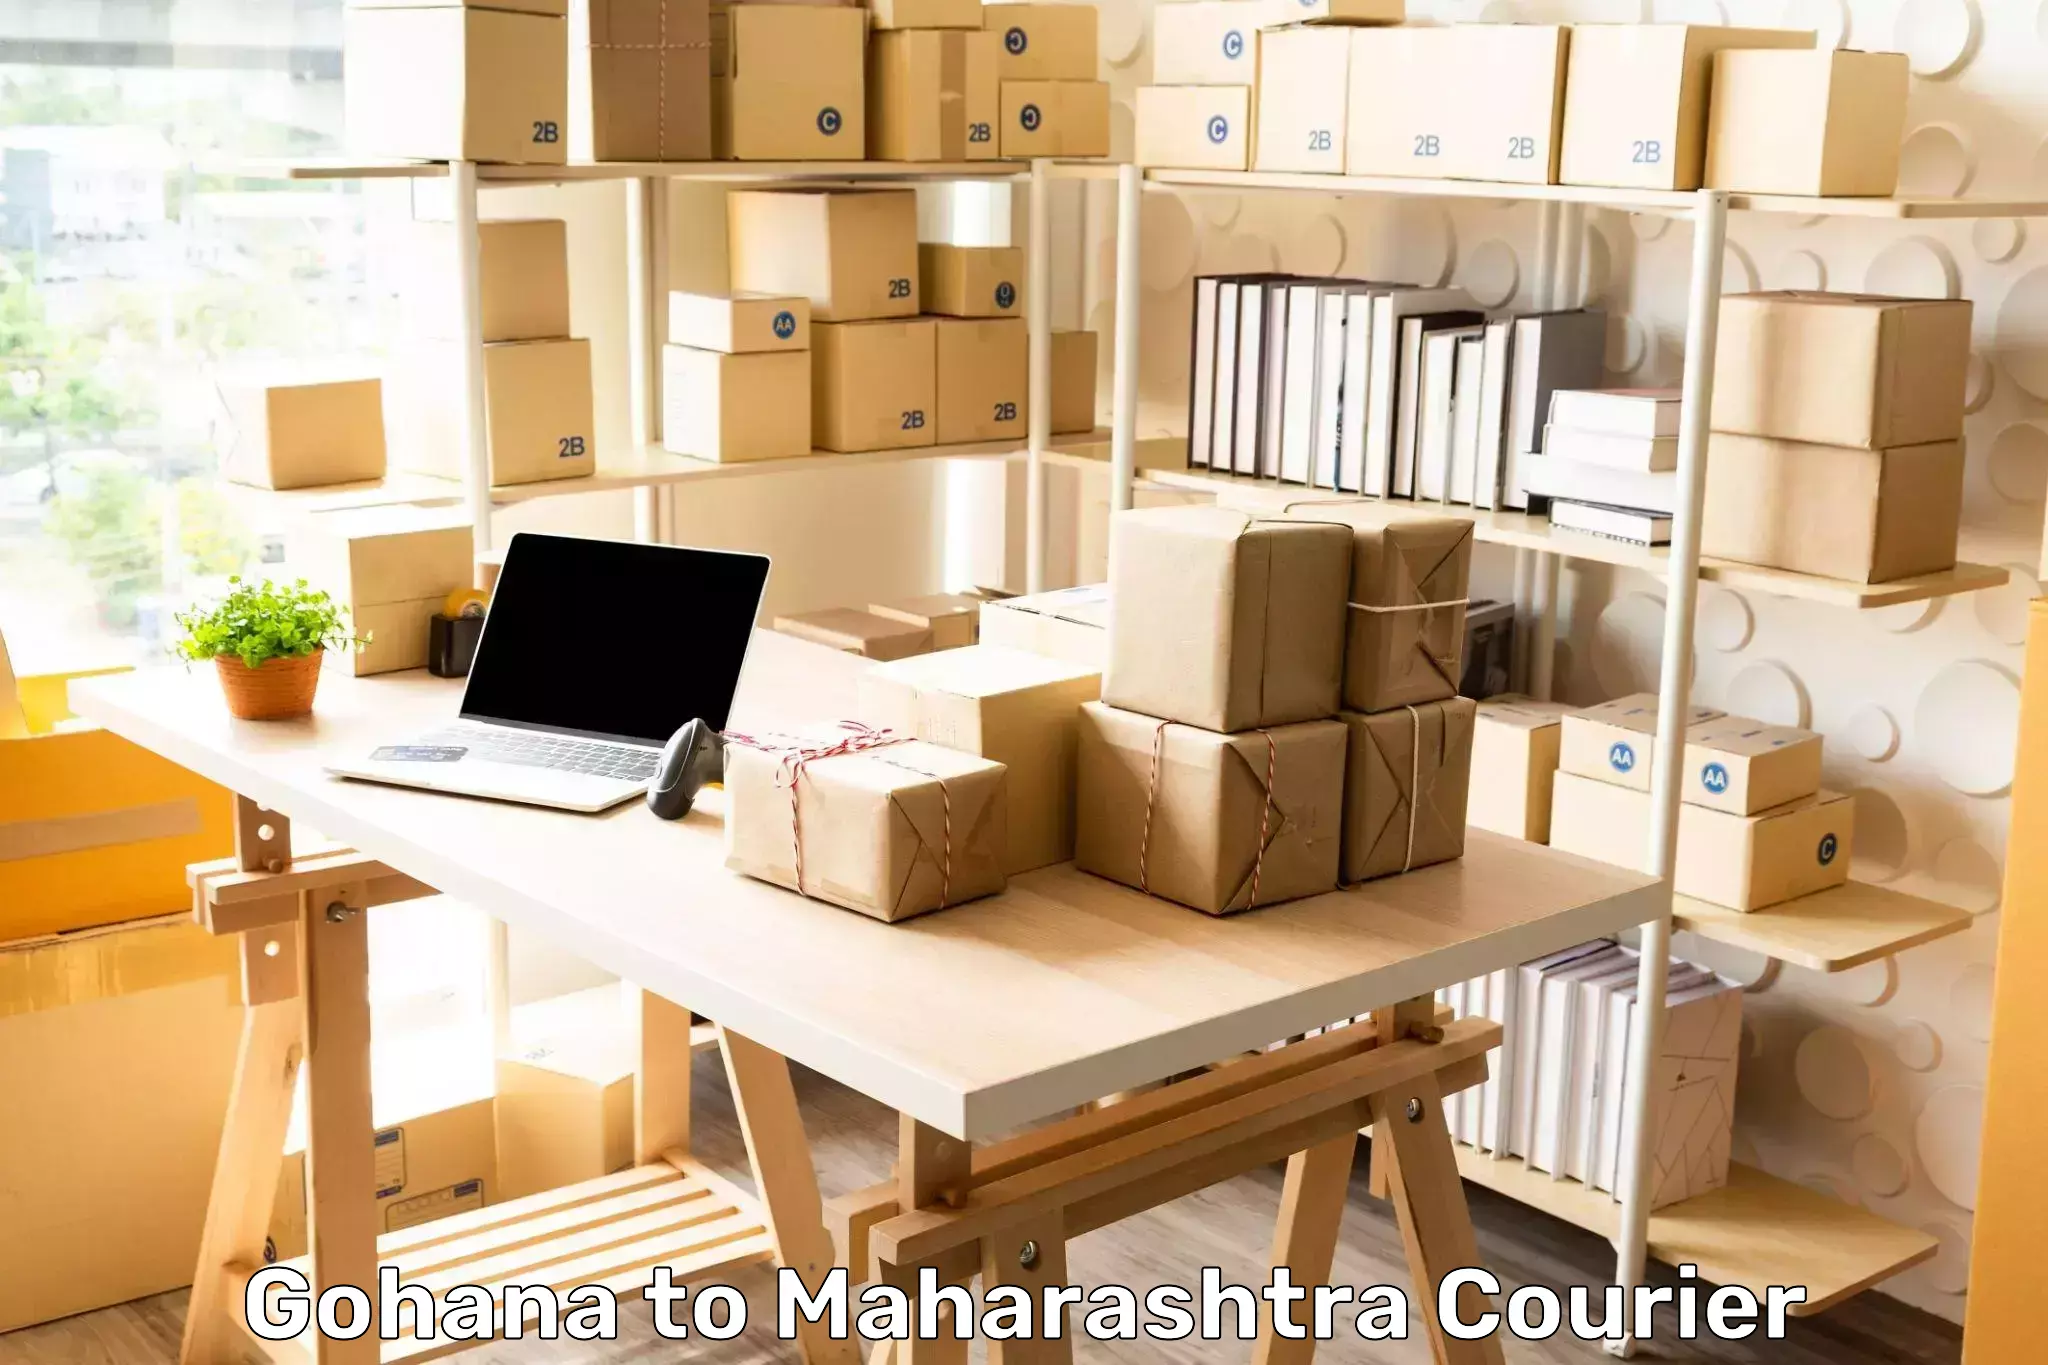 Express courier capabilities in Gohana to Maharashtra